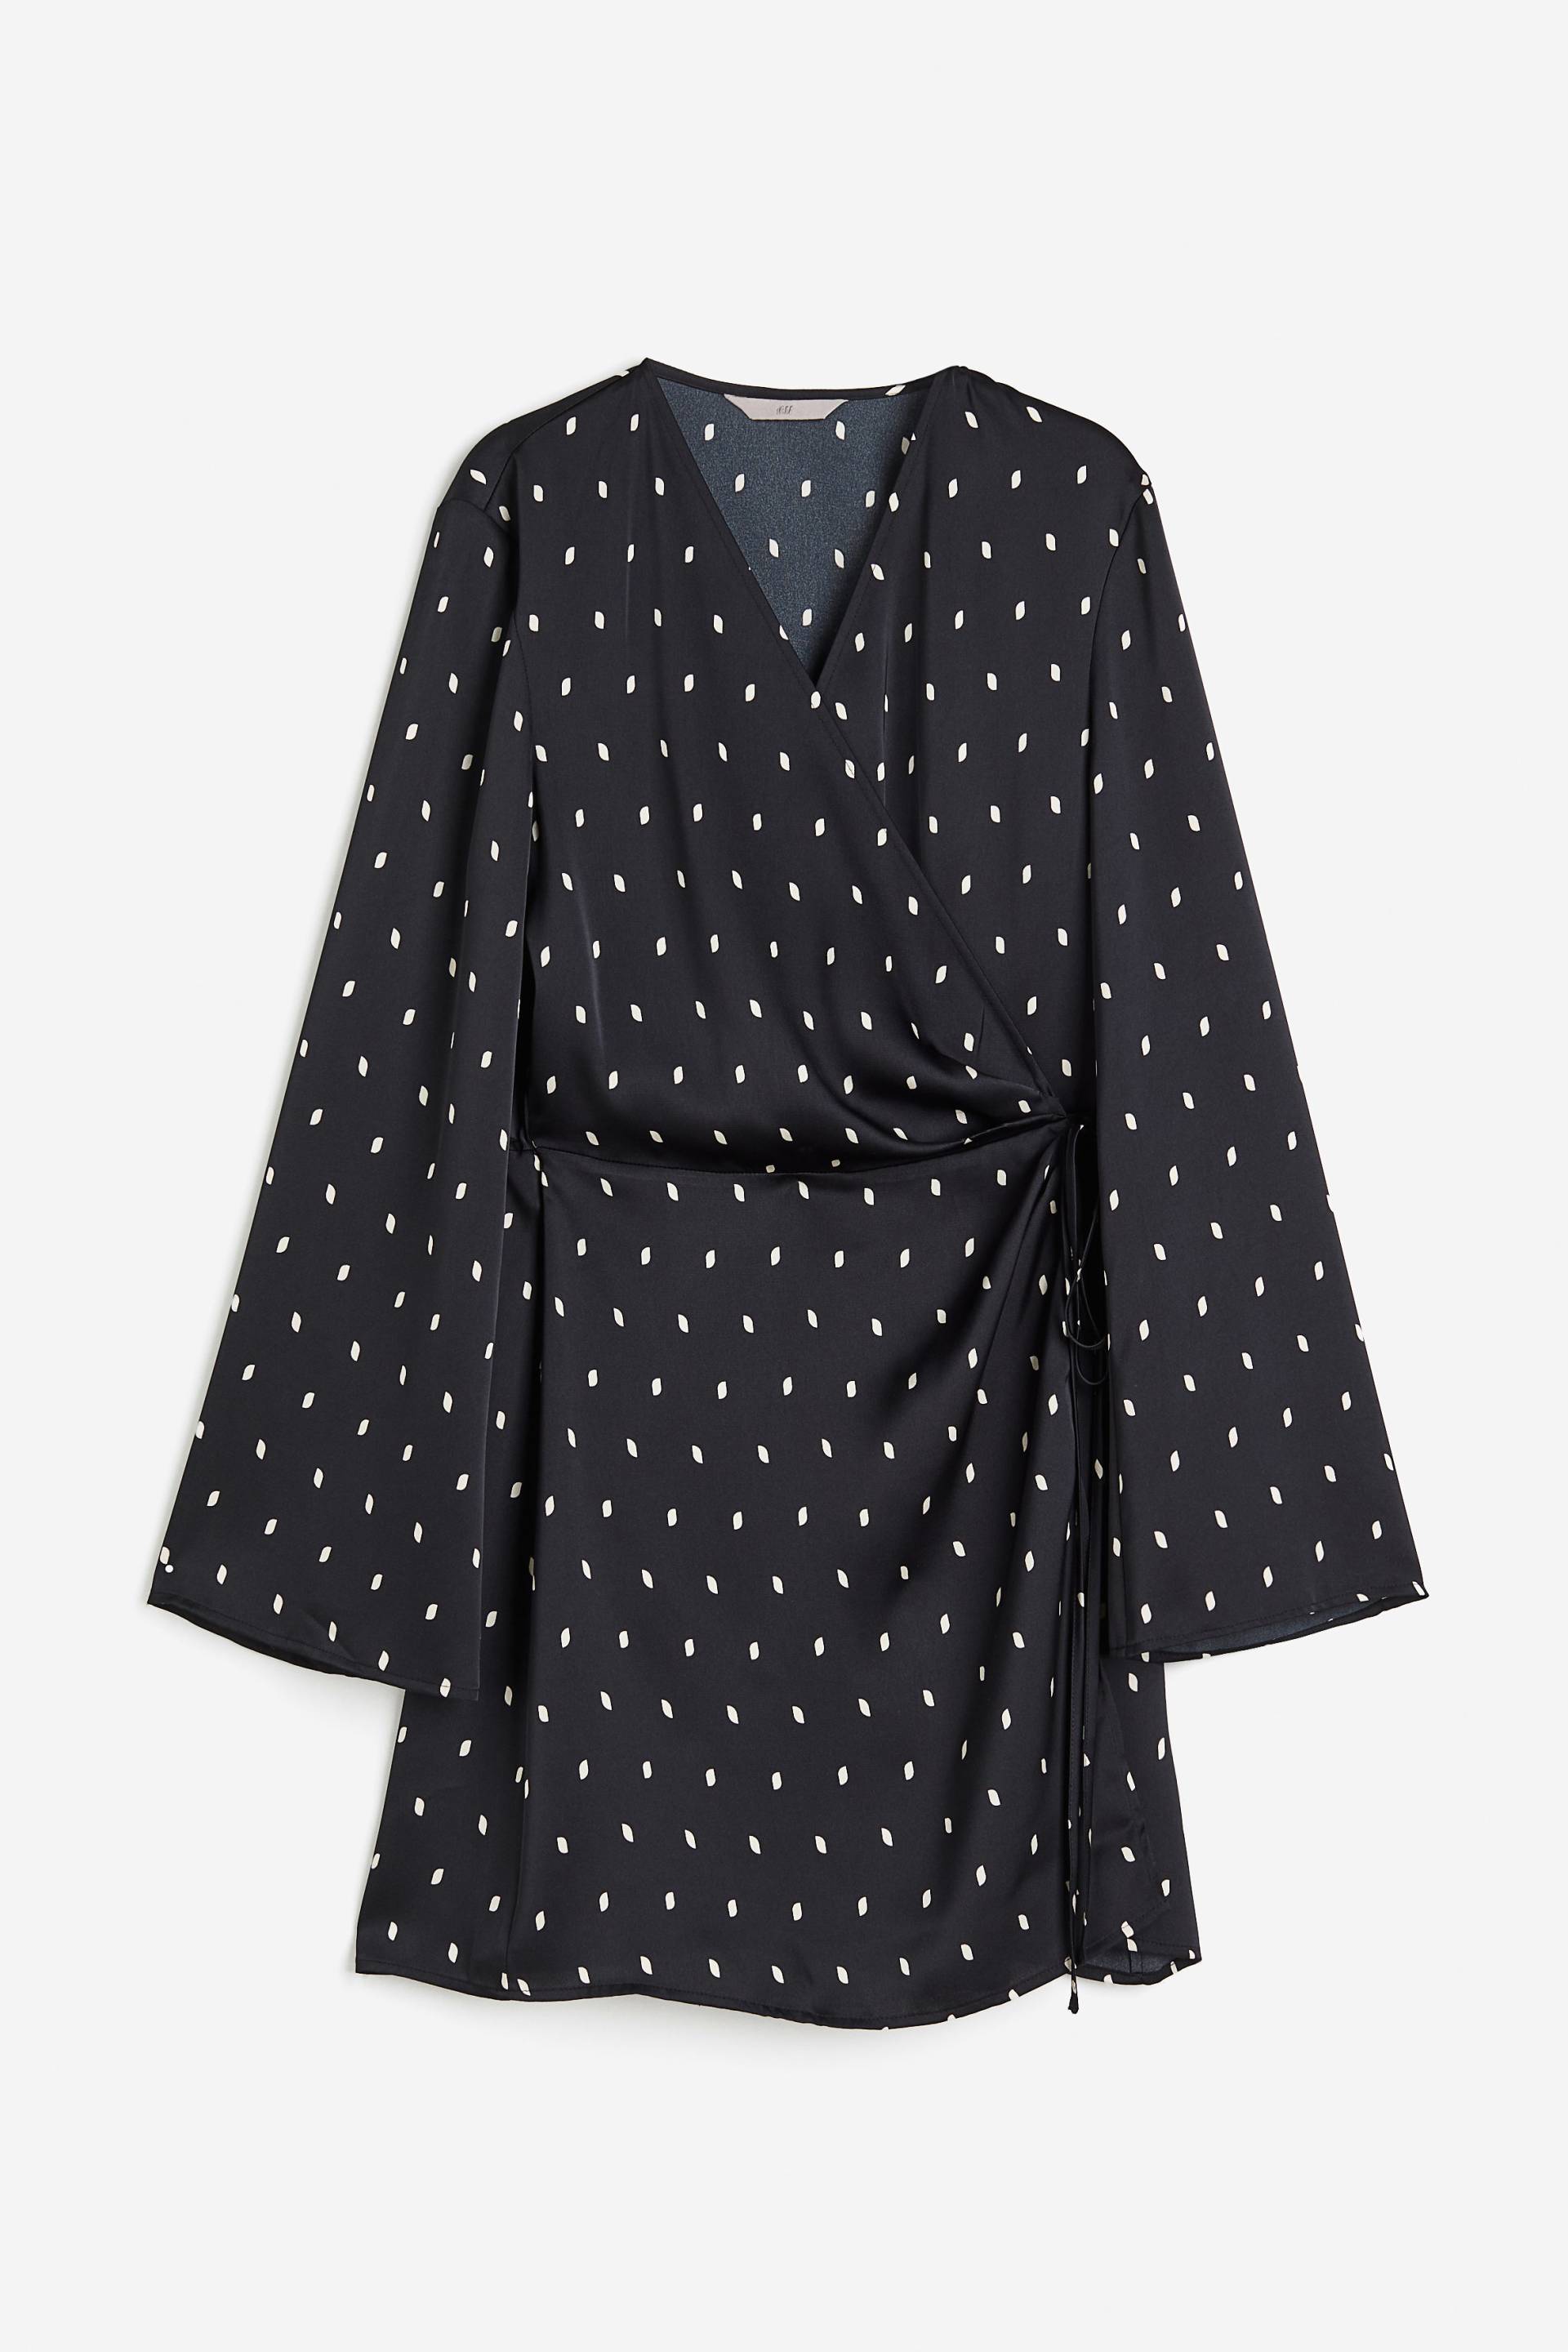 H&M Wickelkleid aus Satin Schwarz/Gepunktet, Alltagskleider in Größe S. Farbe: Black/spotted von H&M